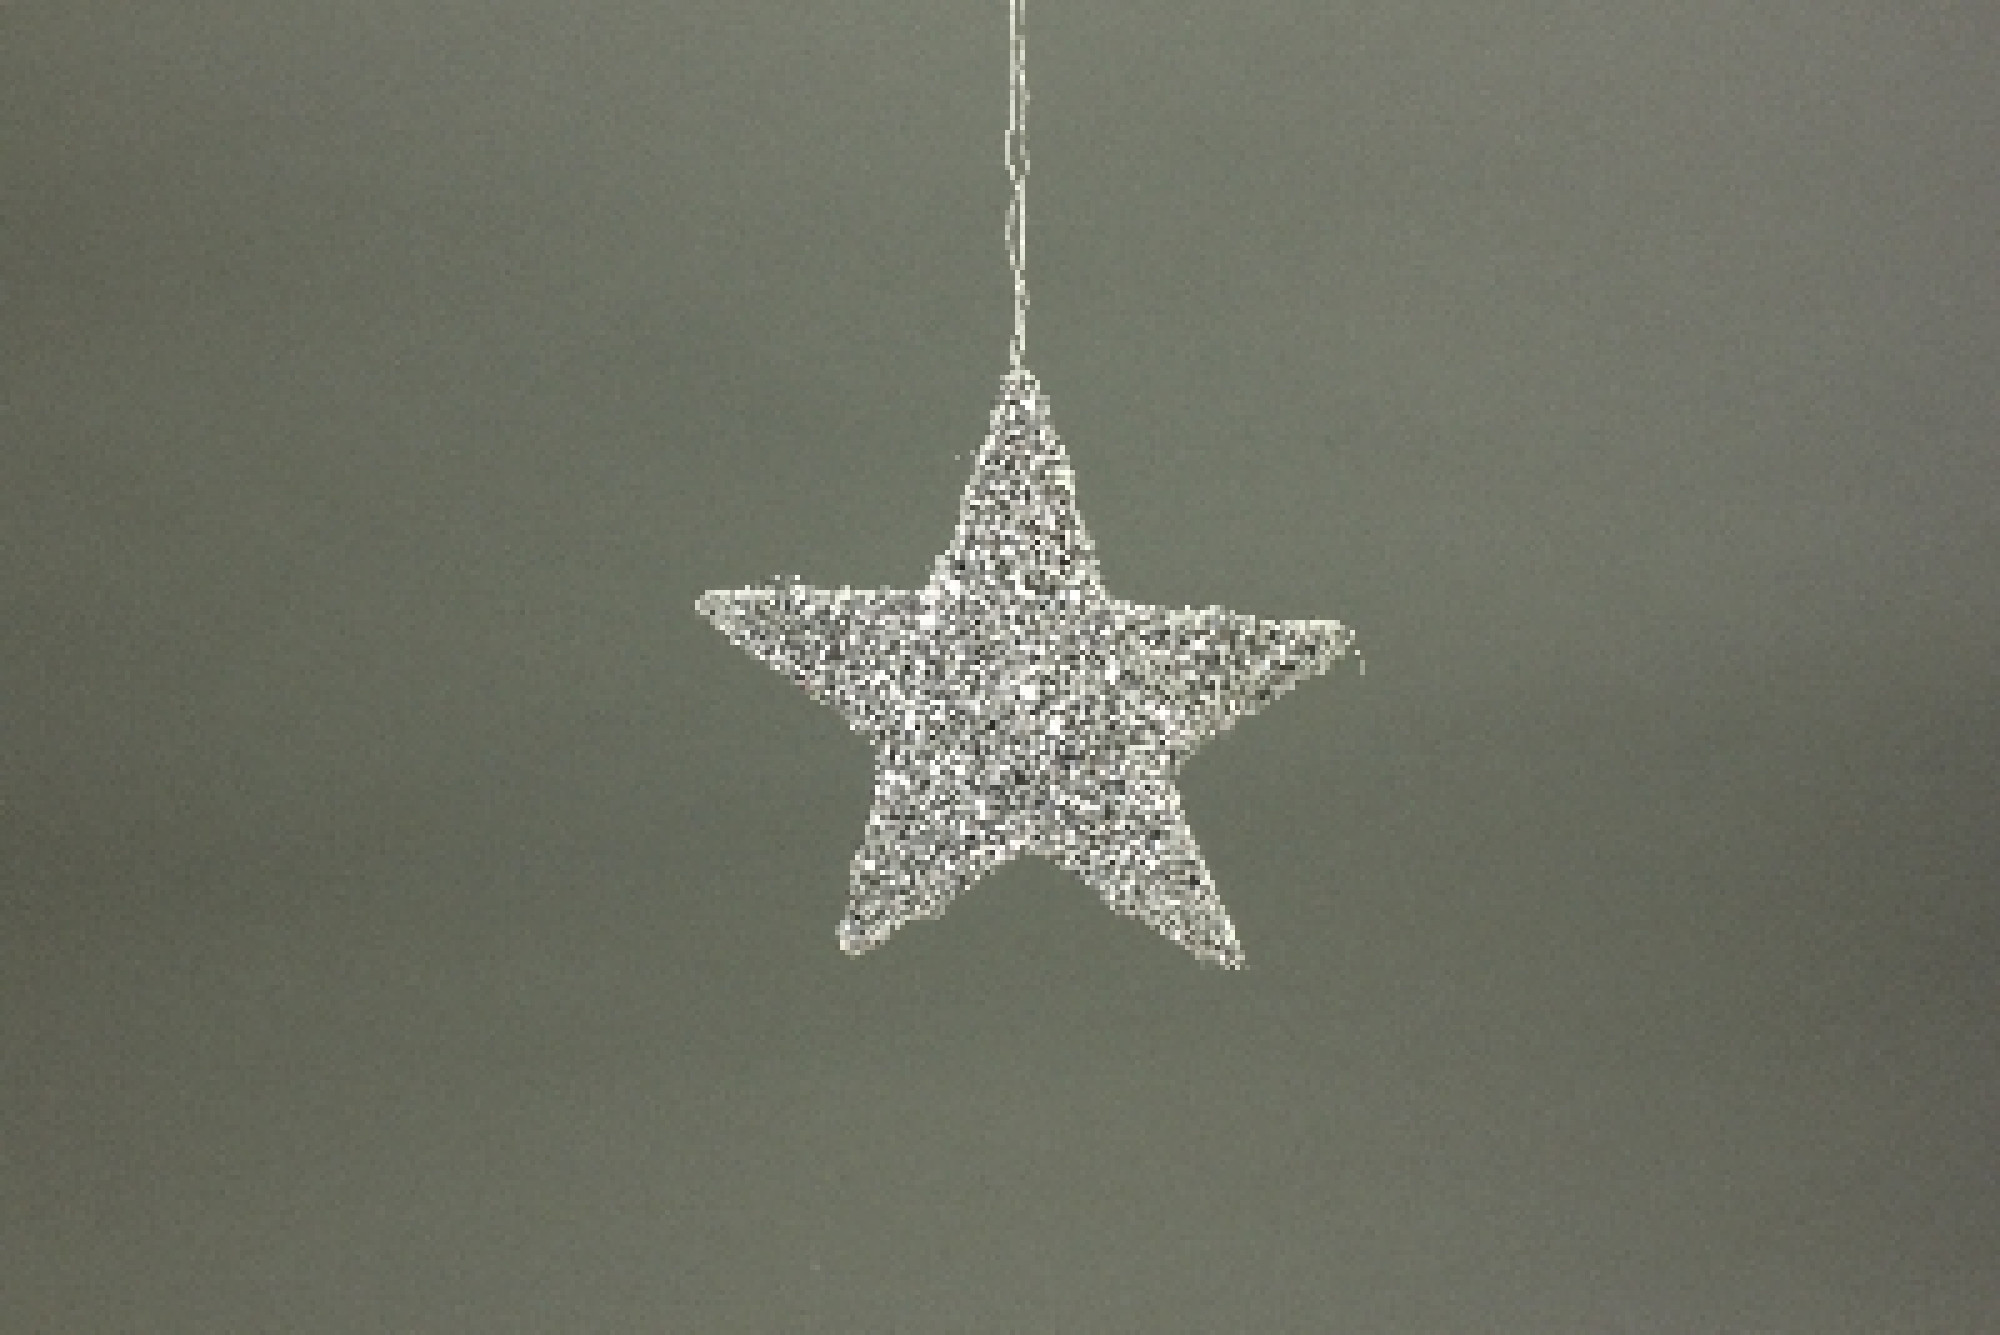 Sisalstern Glimmer silber Weihnachtsdeko - 25 cm